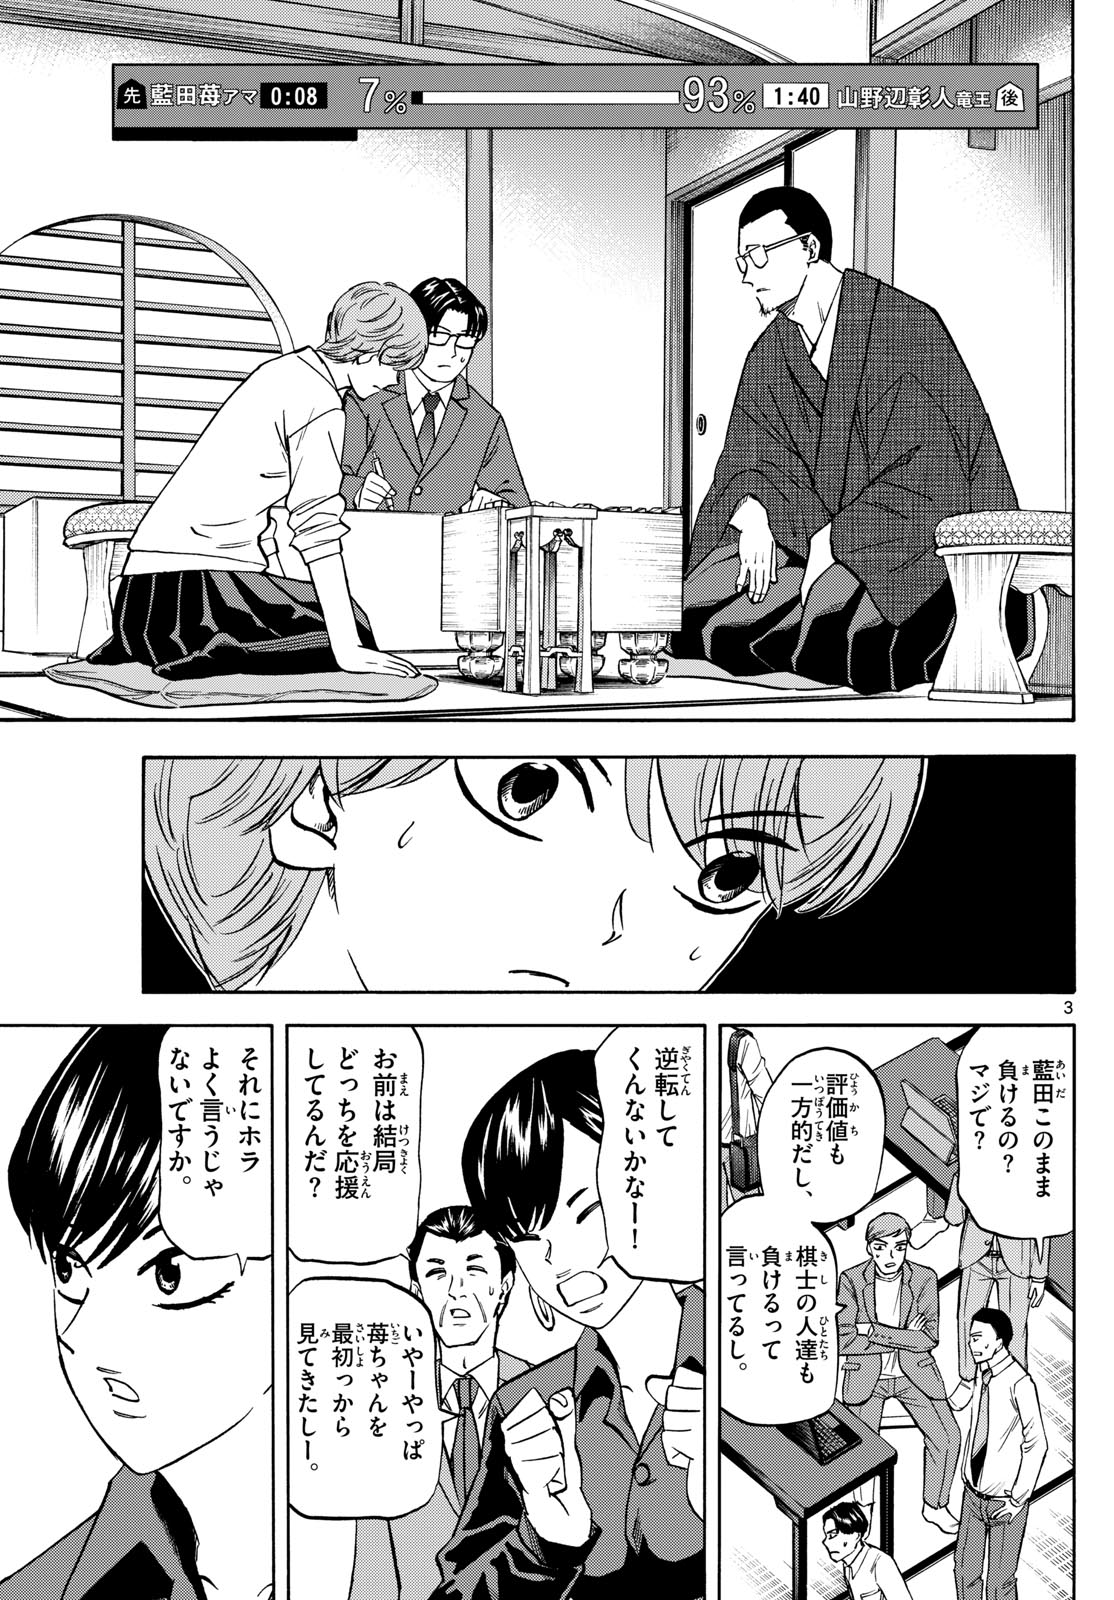 Tatsu to Ichigo - Chapter 178 - Page 3